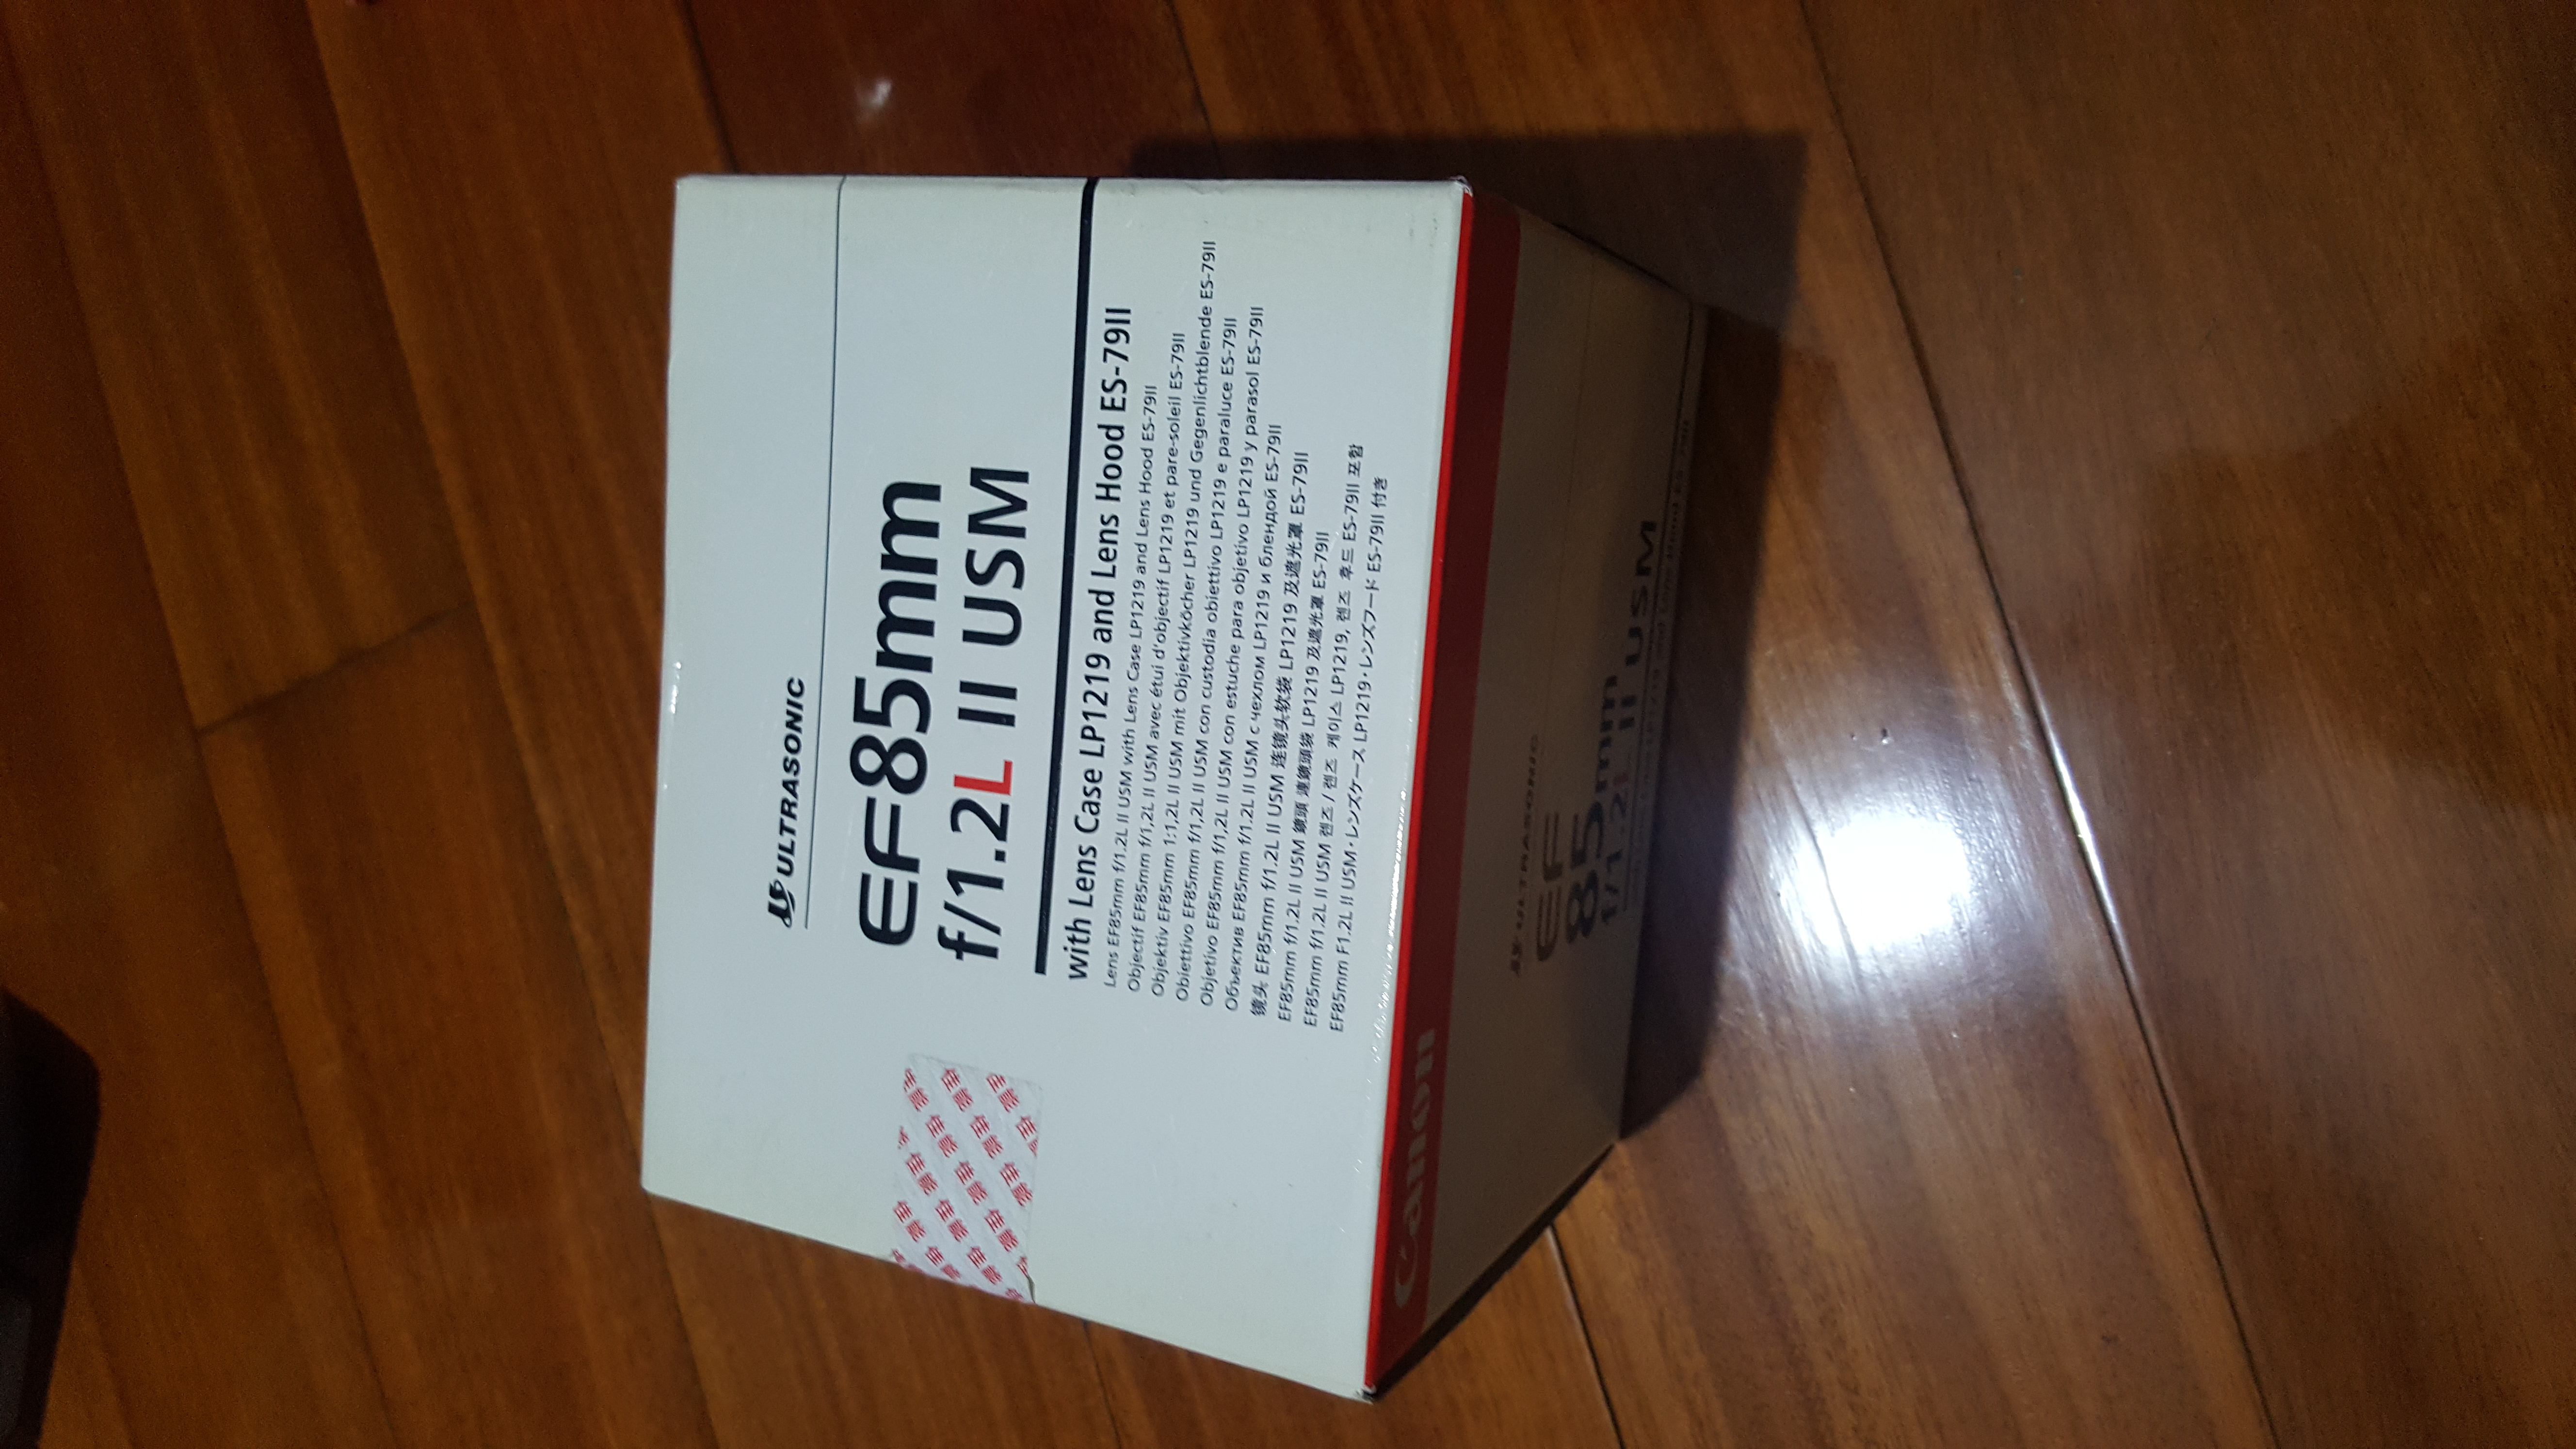 佳能 EF 85mm f/1.2 L II USM 远摄定焦镜头